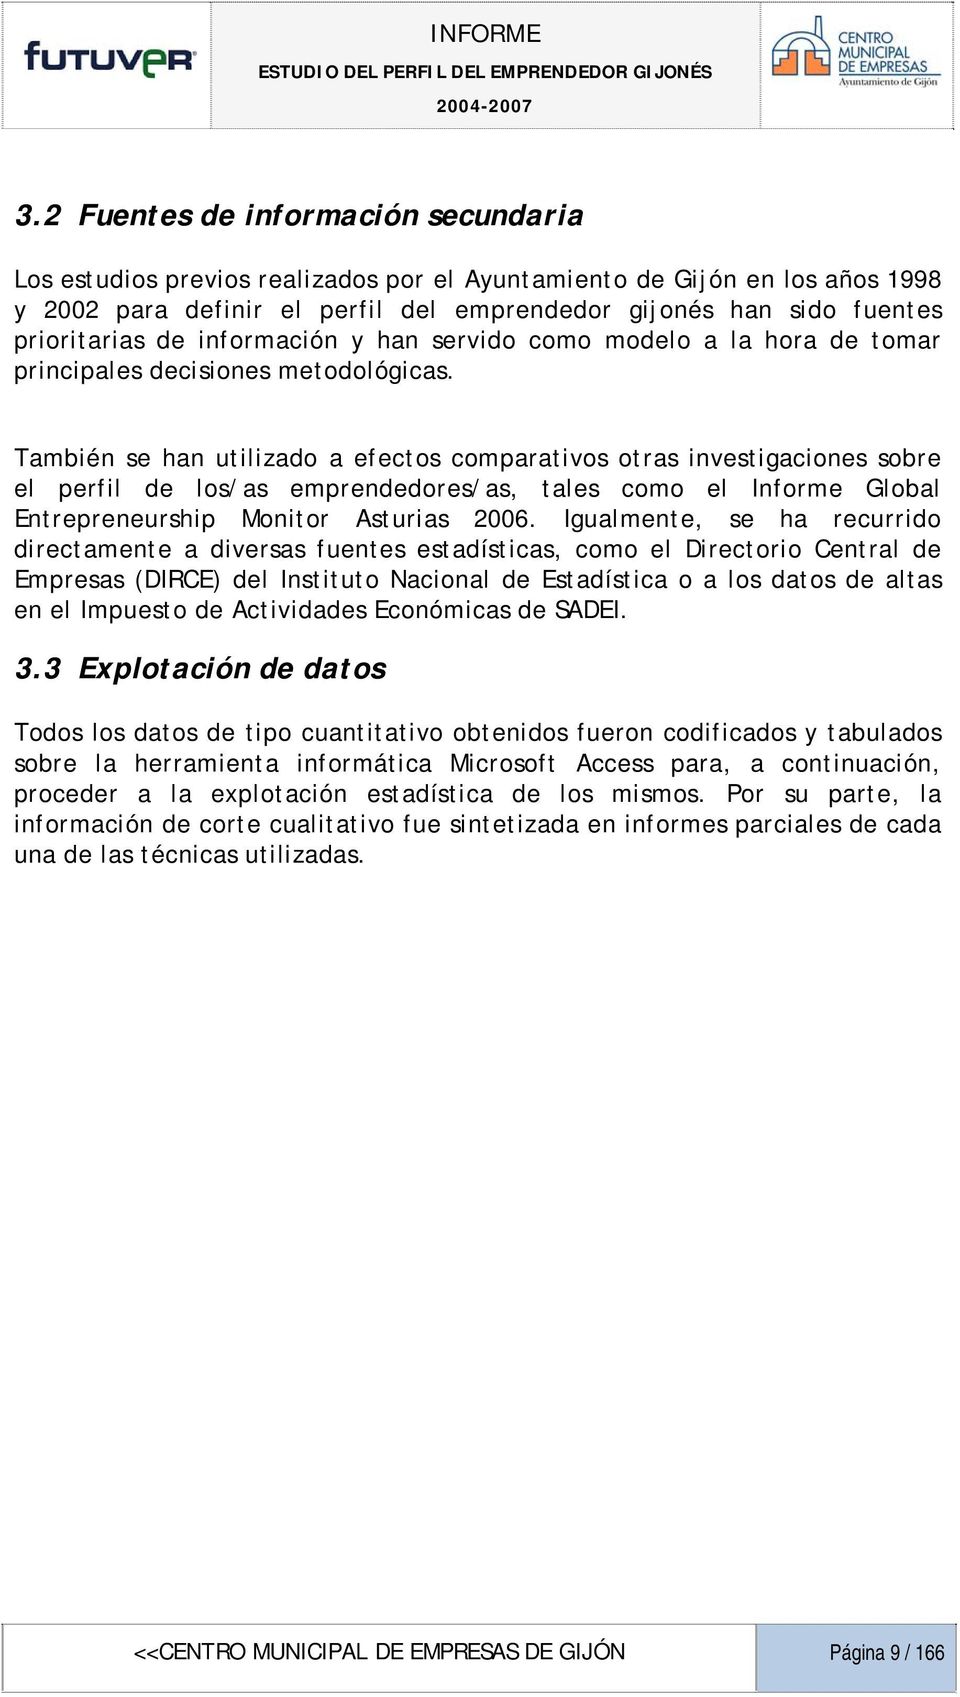 También se han utilizado a efectos comparativos otras investigaciones sobre el perfil de los/as emprendedores/as, tales como el Informe Global Entrepreneurship Monitor Asturias 2006.